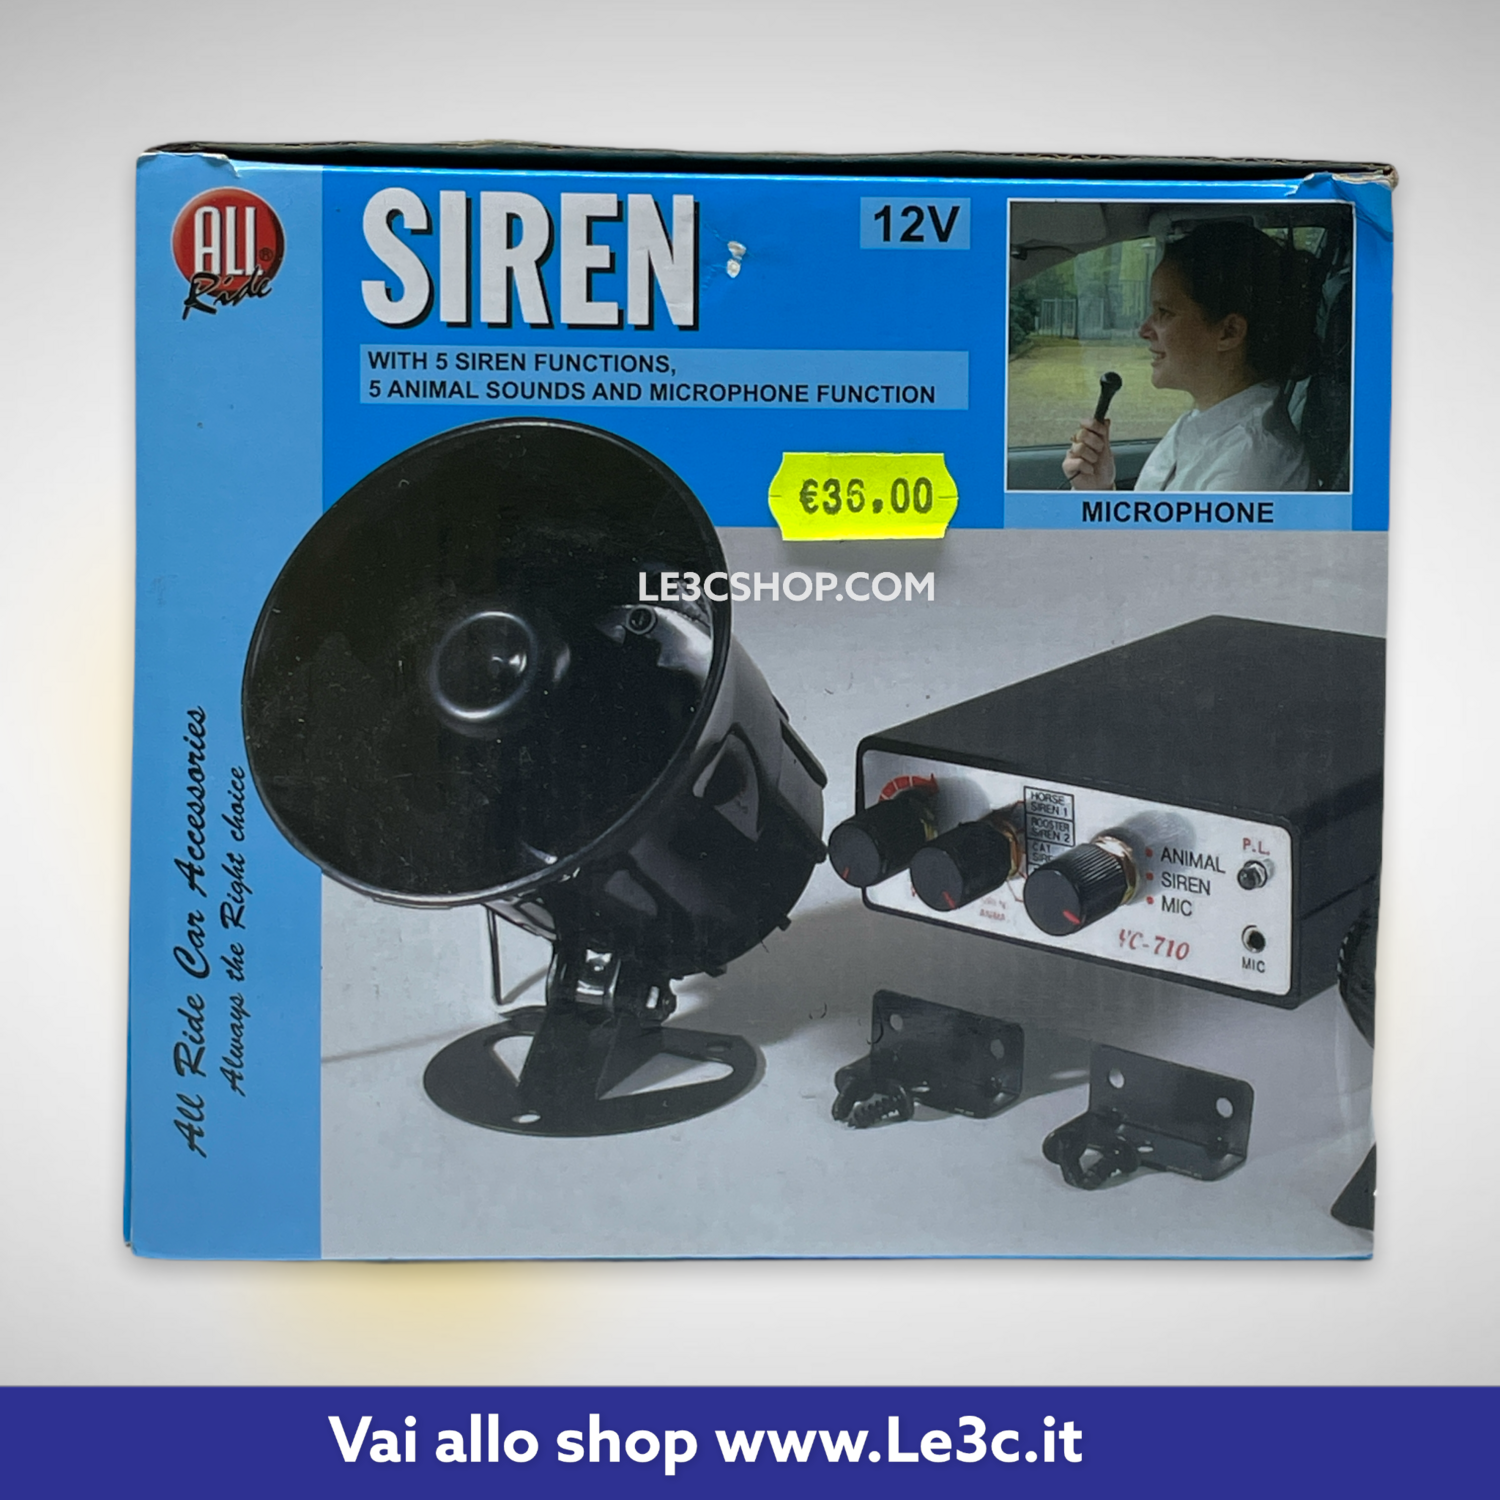 Sirena 12v 5 funzioni con microfono